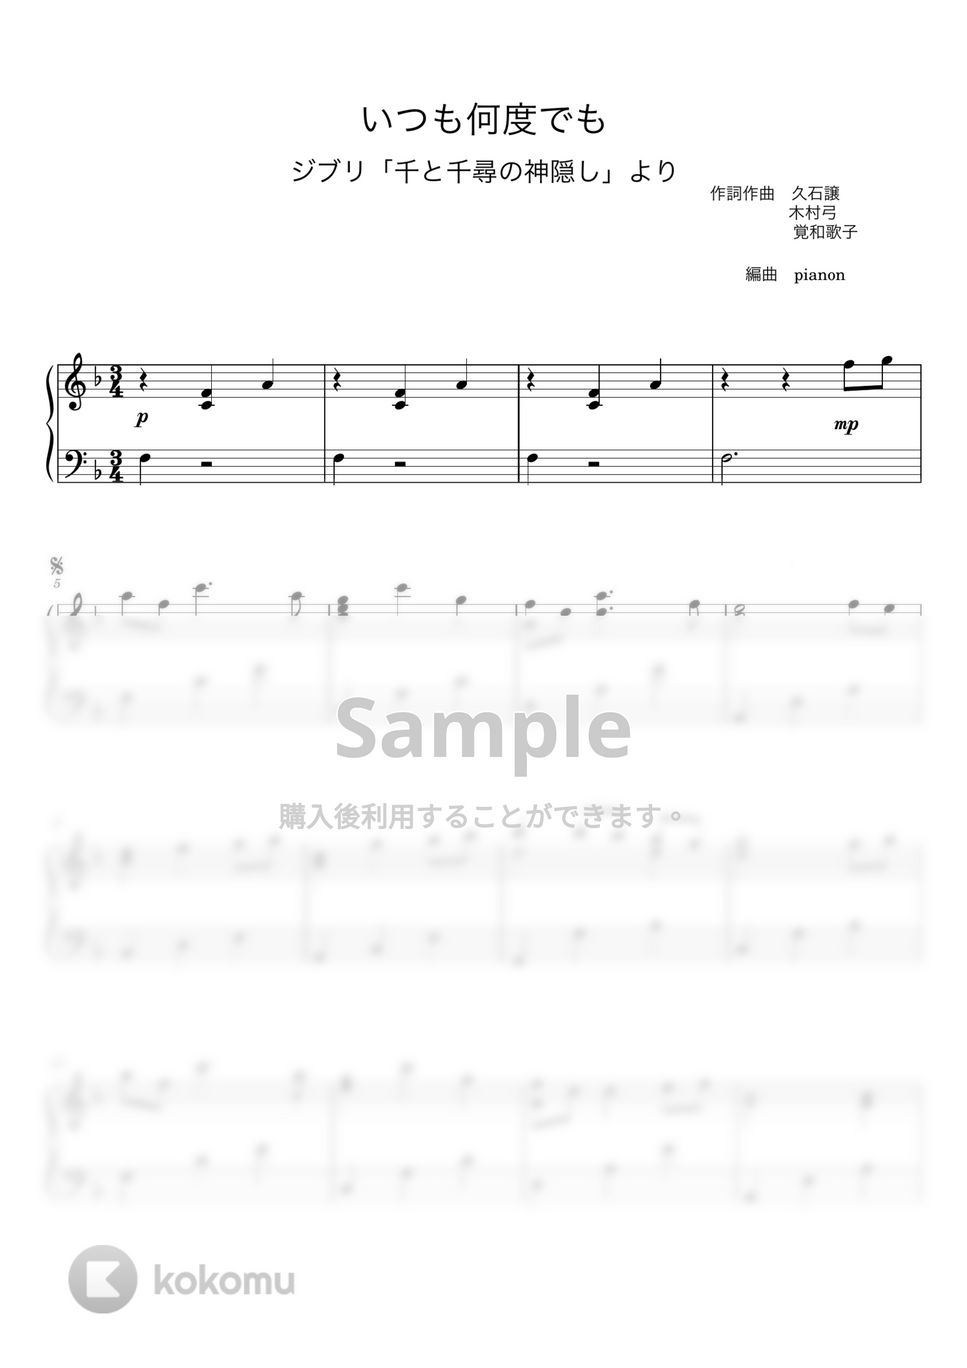 木村弓 - いつも何度でも (ピアノ上級ソロ) by pianon